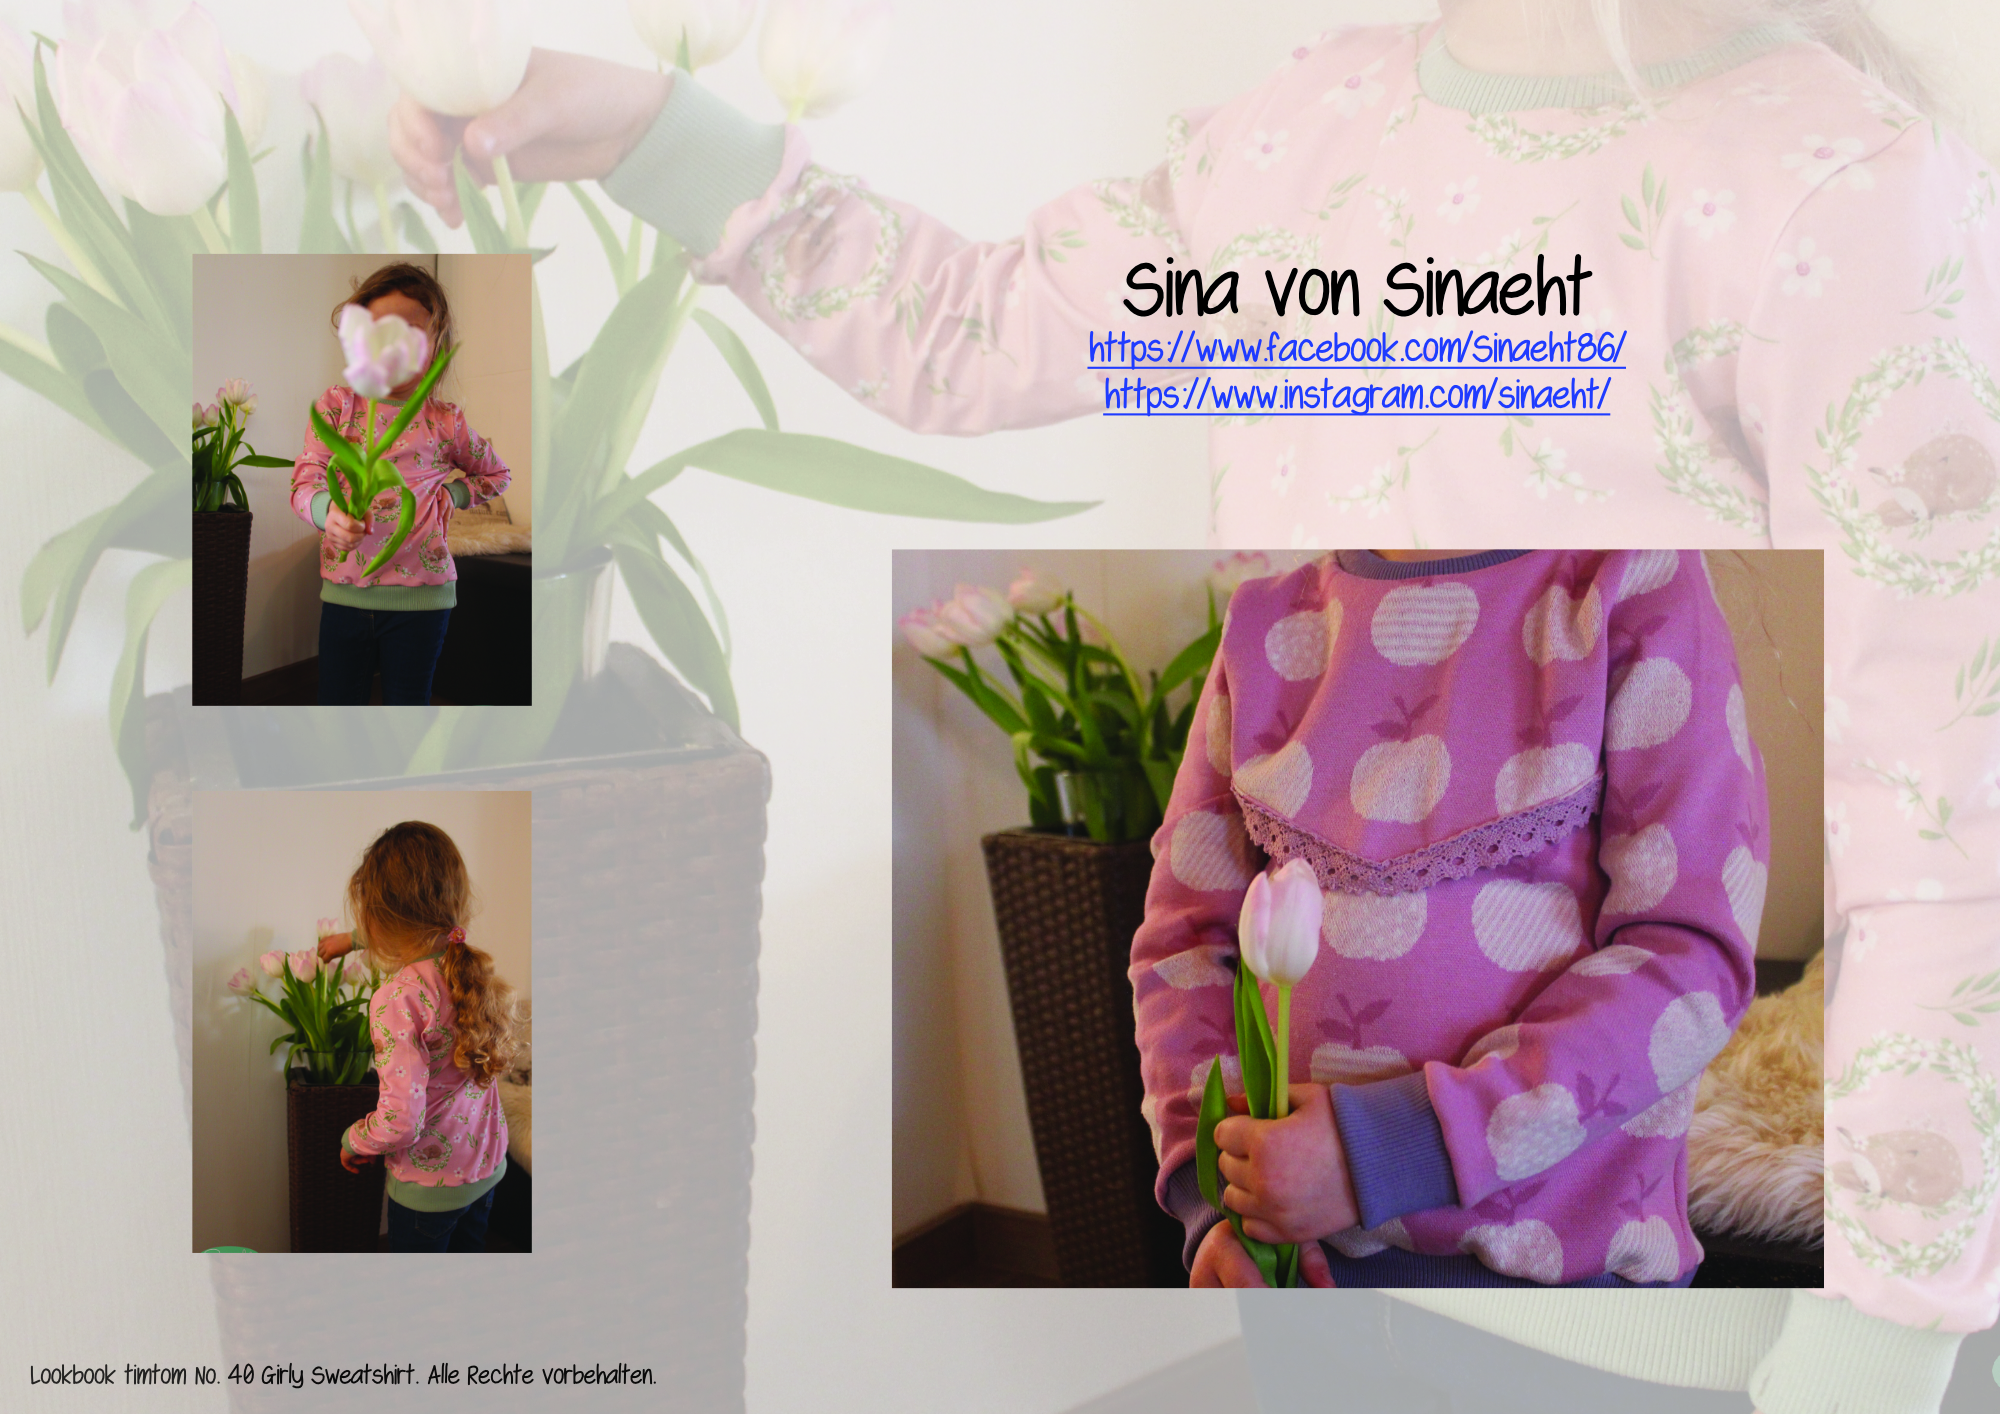 Designbeispiele zum Girly Sweatshirt timtom No.40, genäht von Sina von Sinaeht